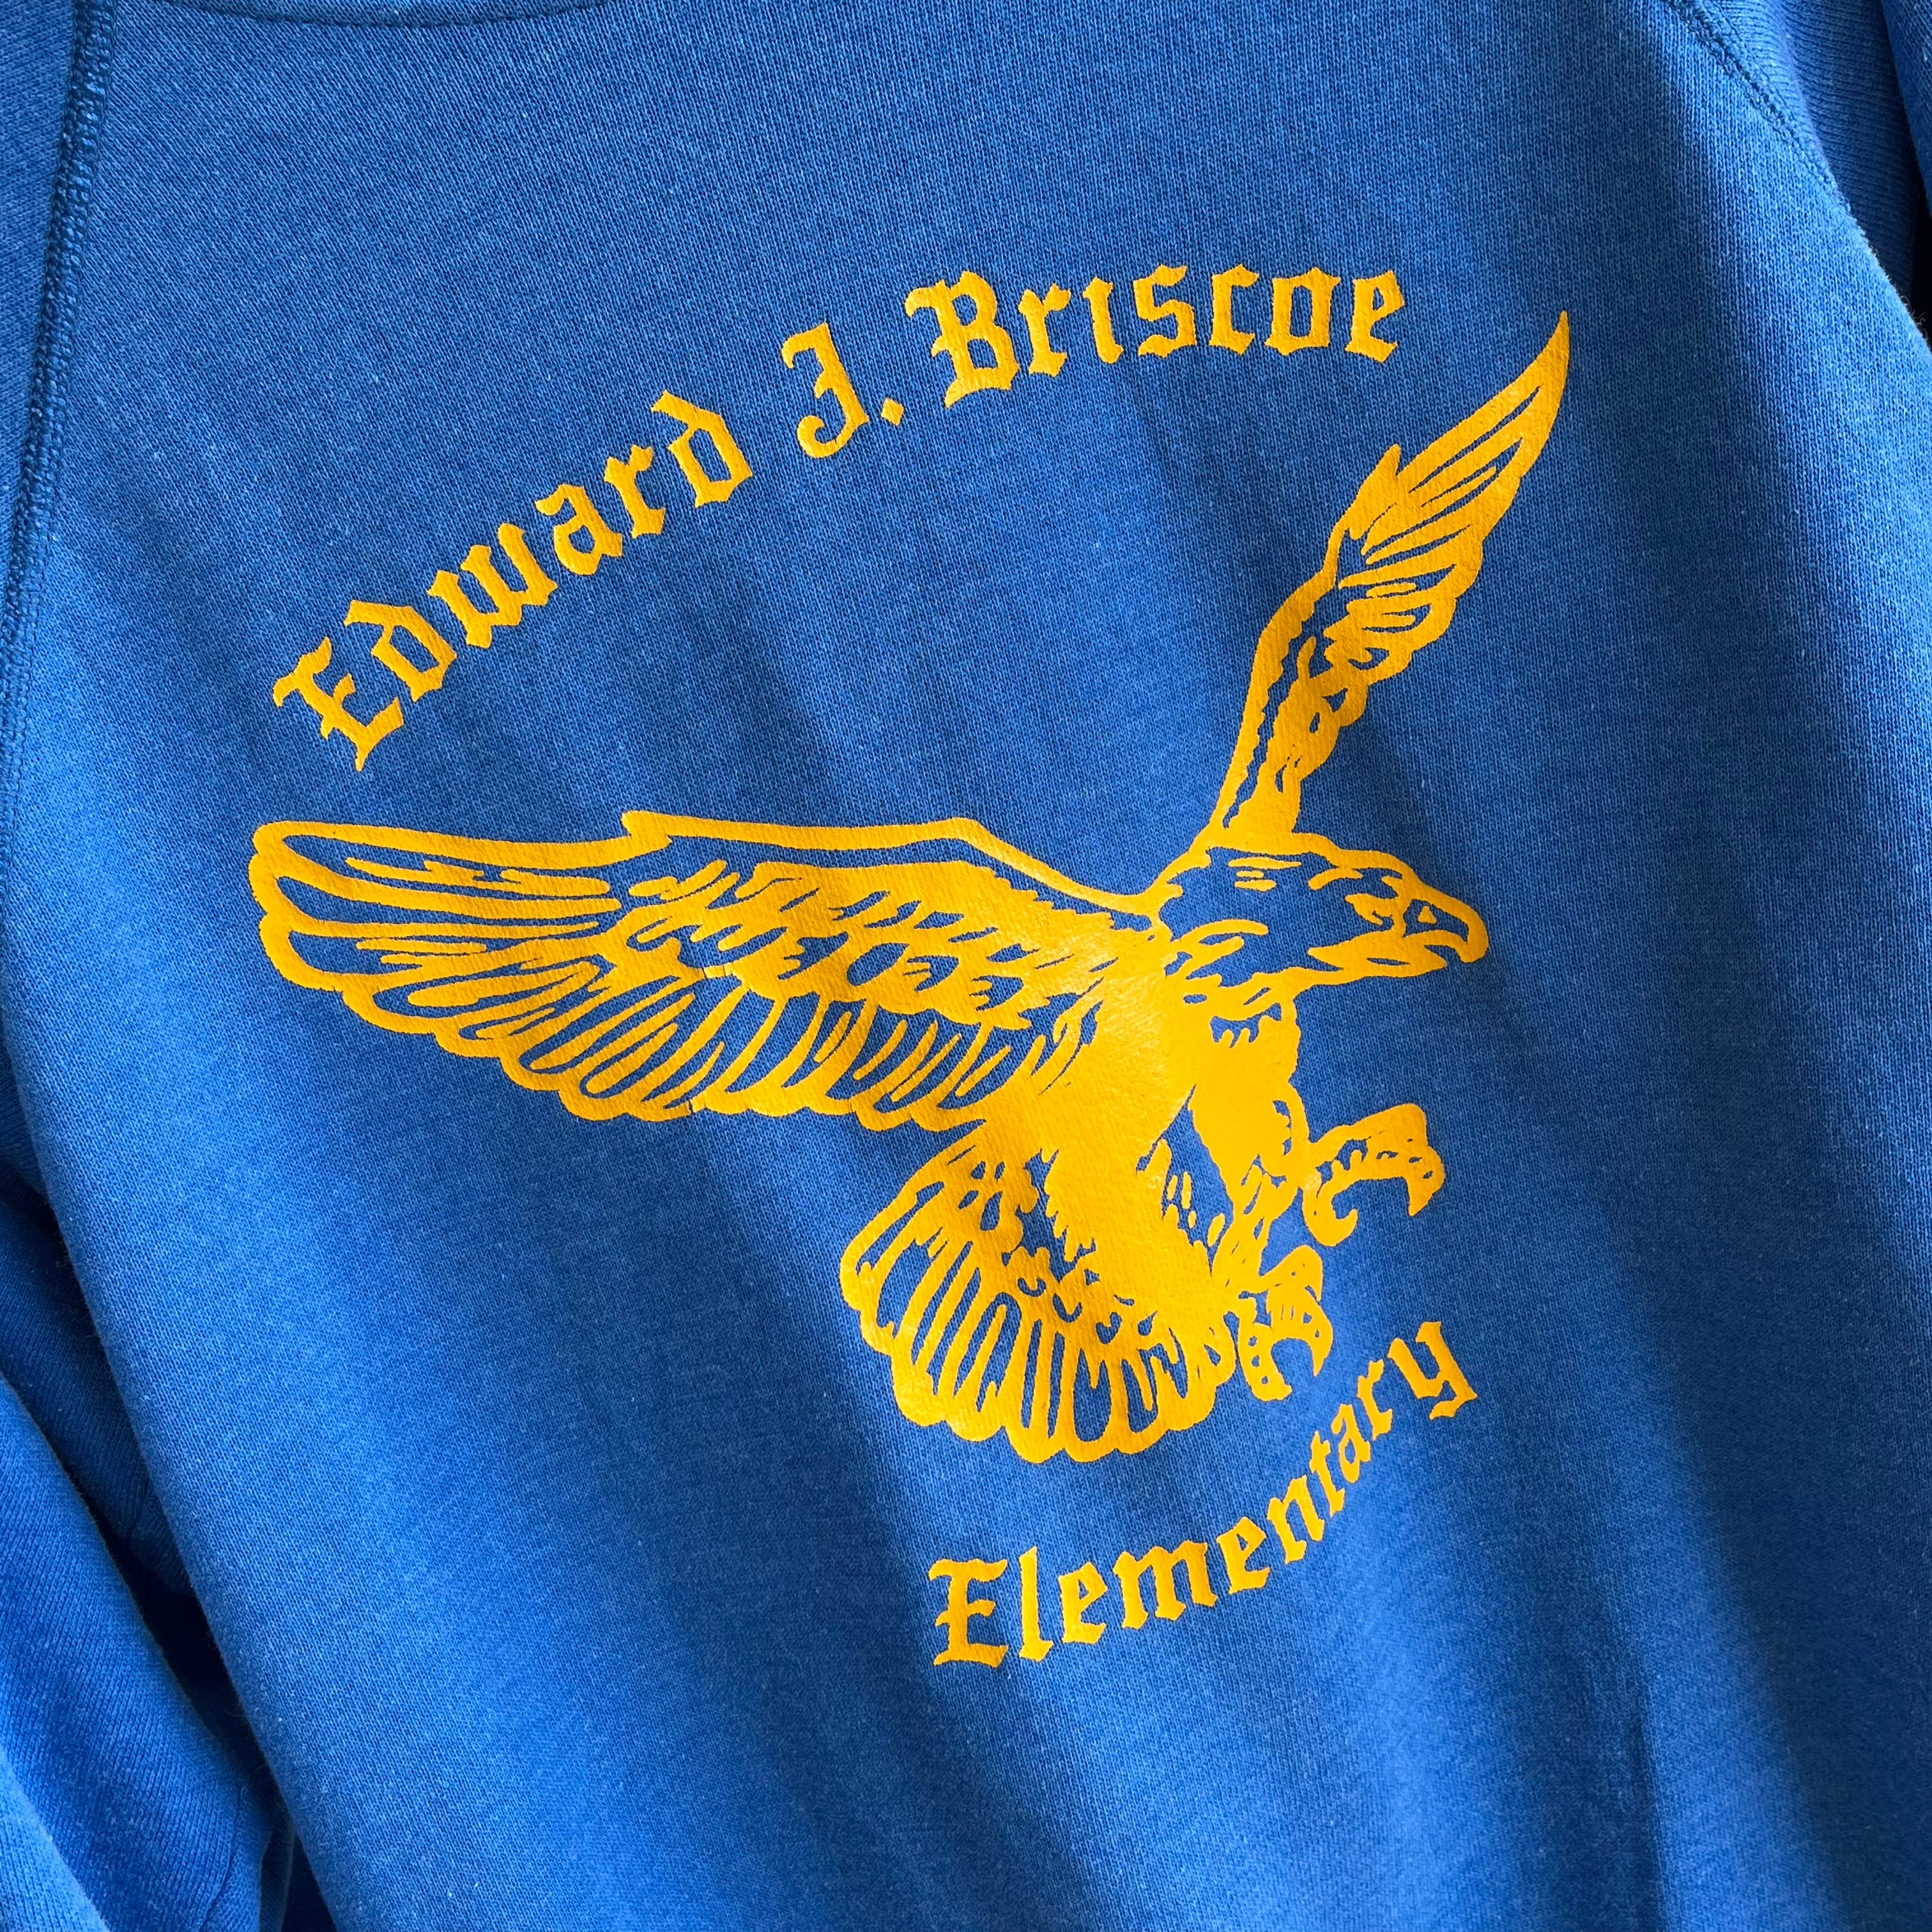 Sweat-shirt de l'école élémentaire Edward J. Briscoe des années 1980